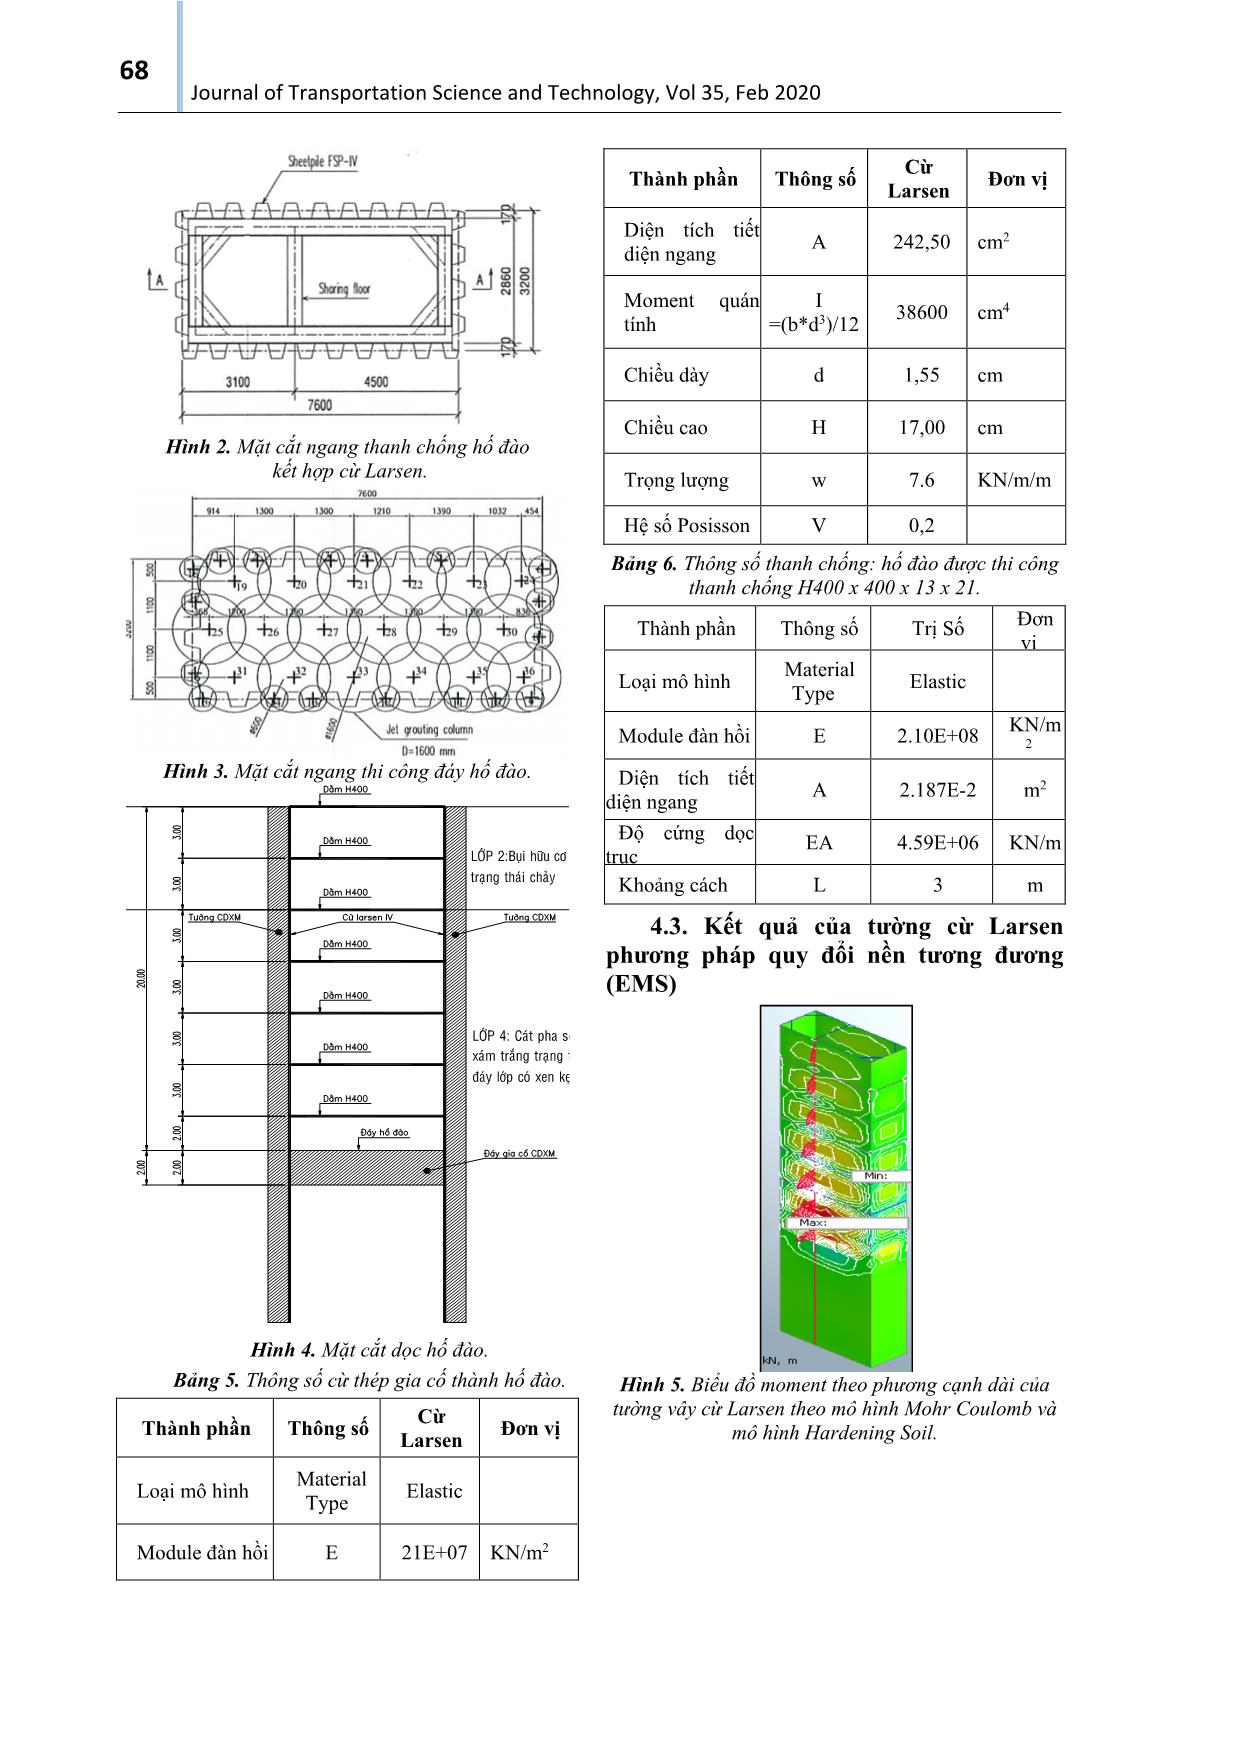 Nghiên cứu ứng dụng giải pháp kết hợp cọc đất xi măng và cừ thép để giữ ổn định thành hố đào sâu cho dự án cải thiện môi trường nước thành phố Hồ Chí Minh trang 4